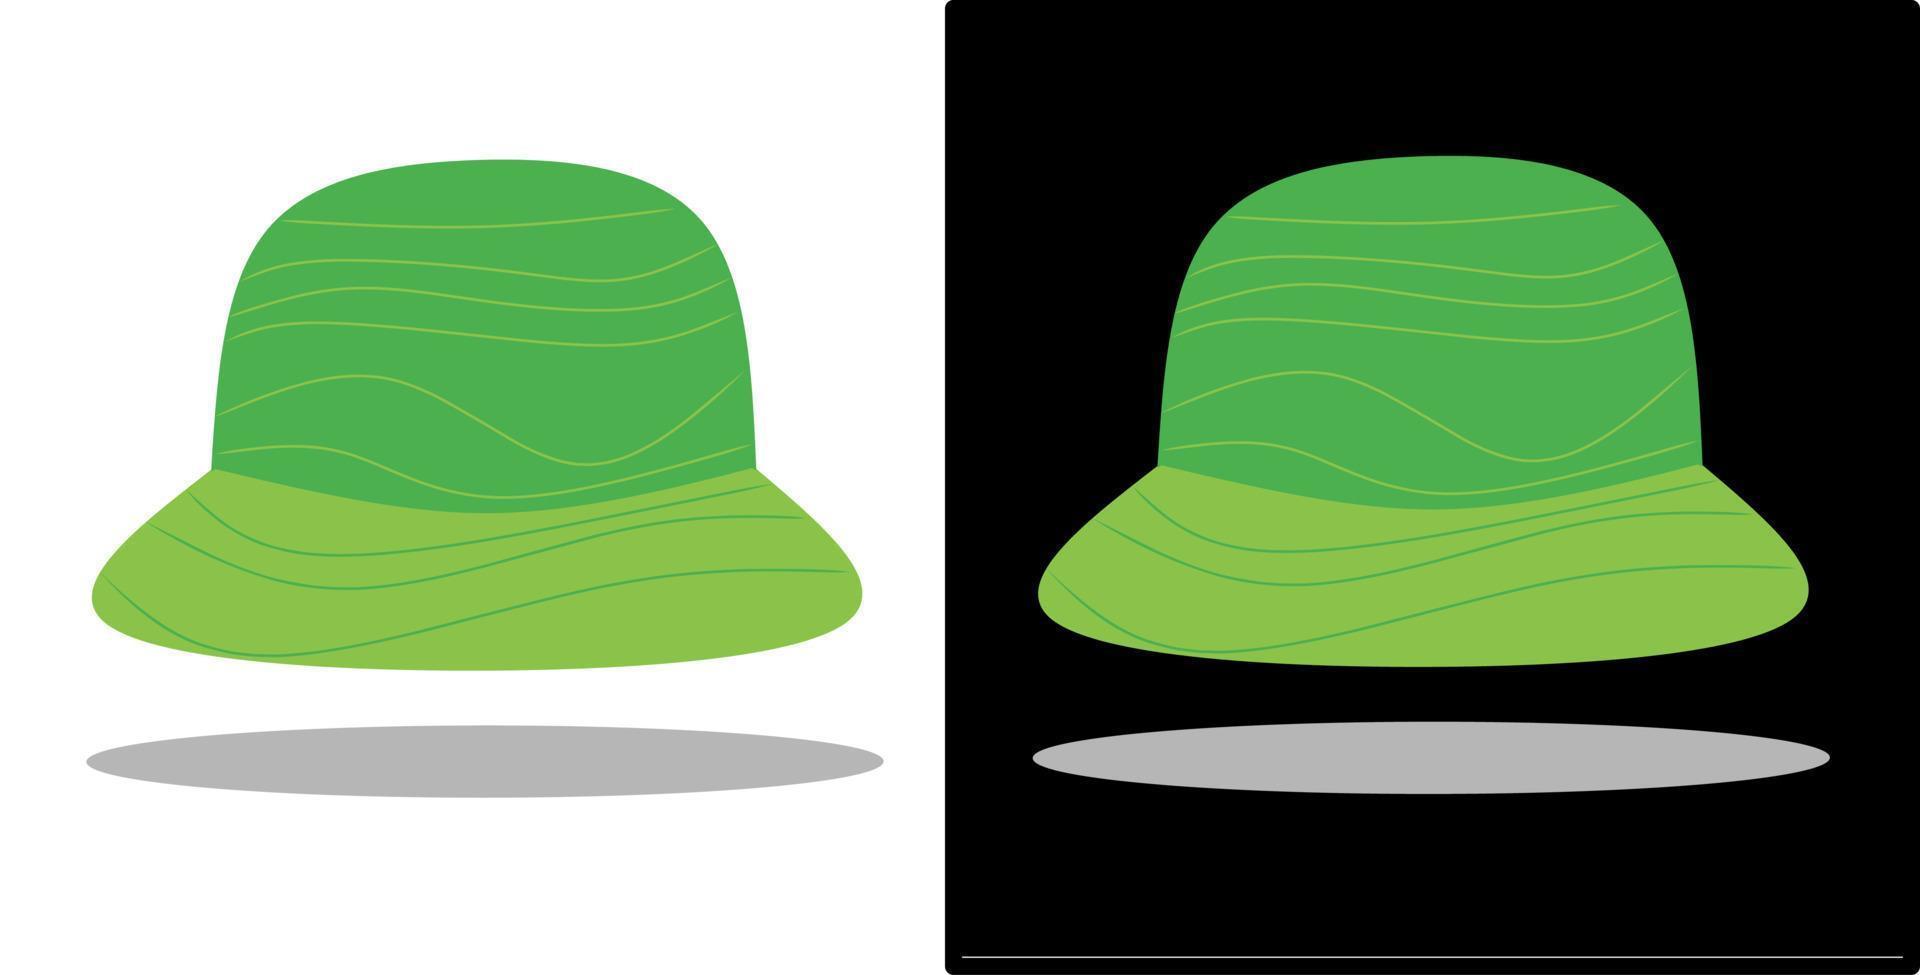 ilustração vetorial de um chapéu, isolado em um design de fundo preto e branco vetor